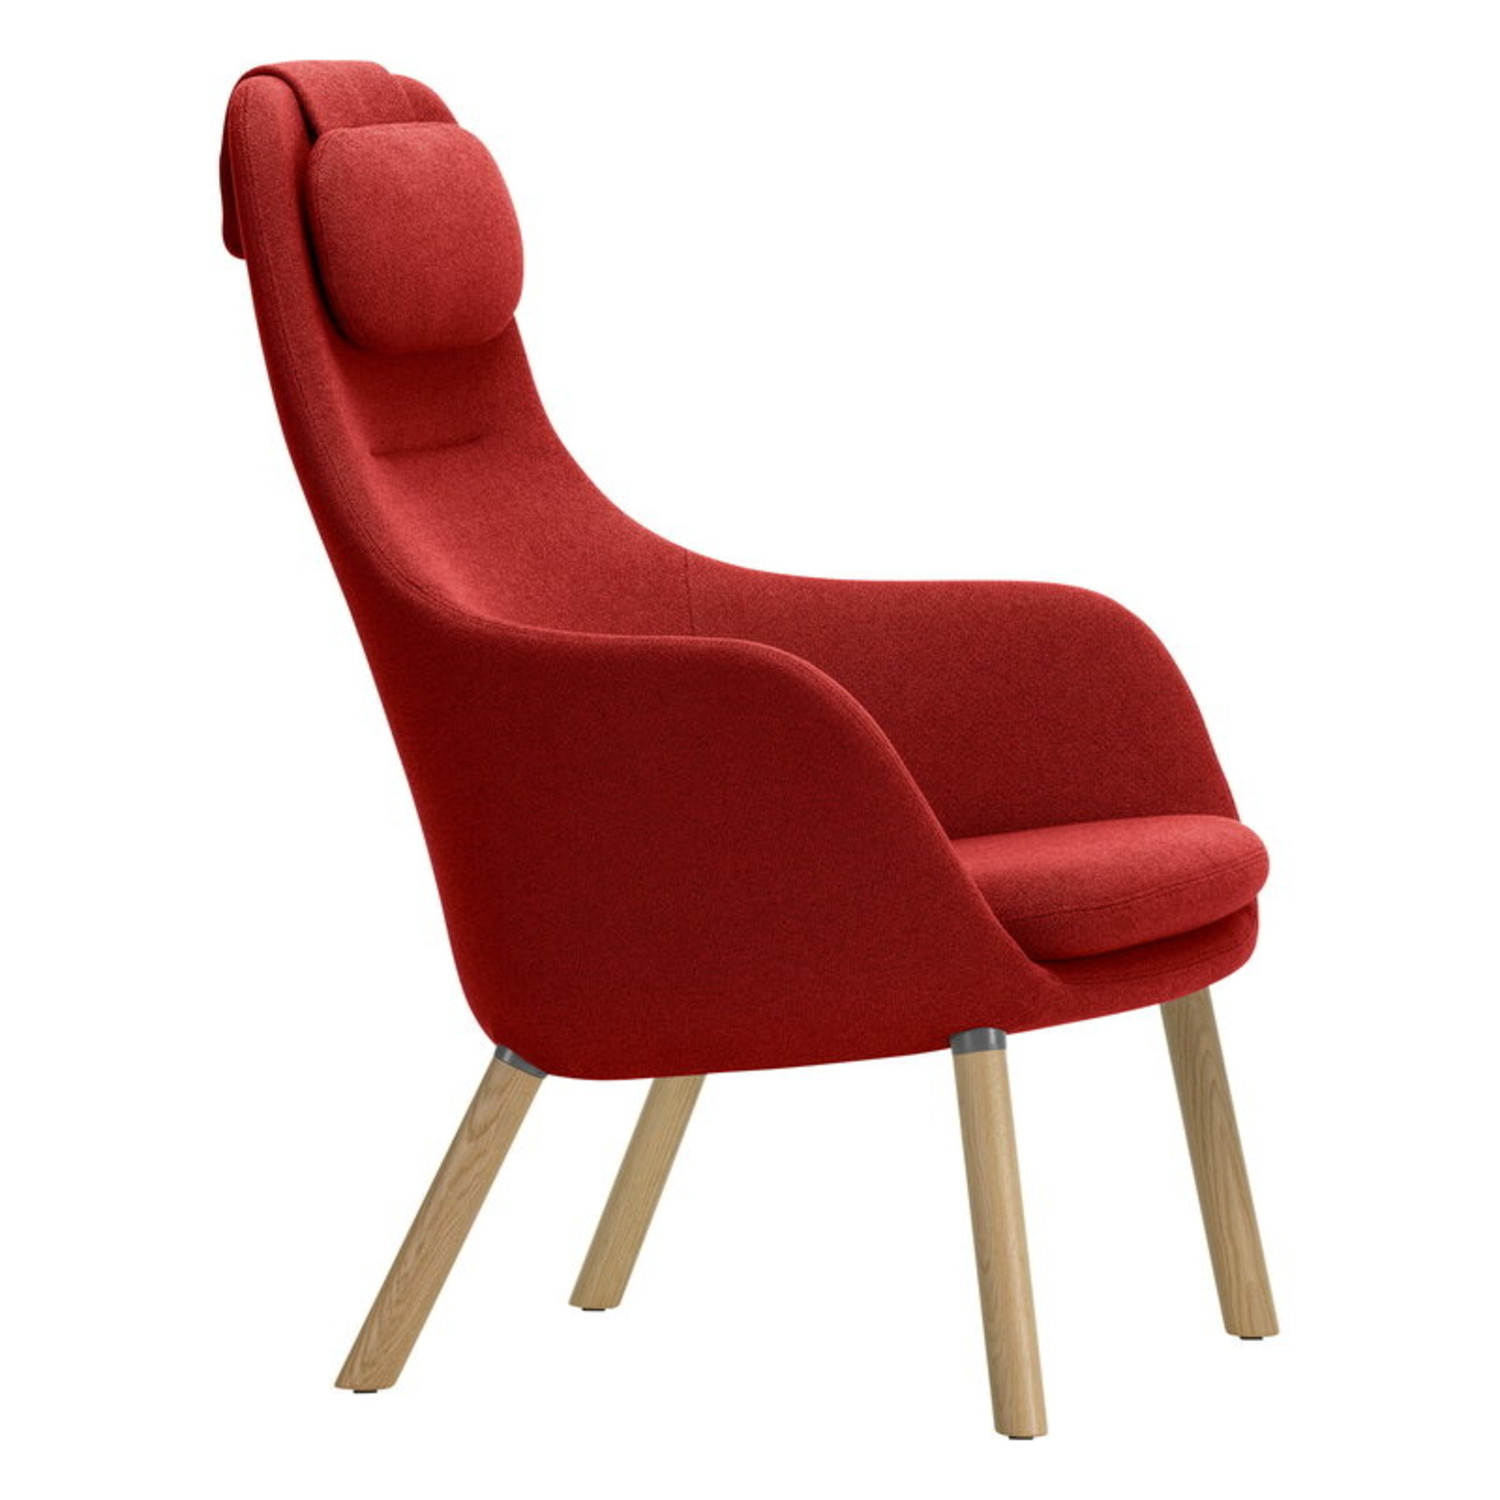 HAL lounge stoel met los zitkussen - Credo 16 red chili eik - Nordic New